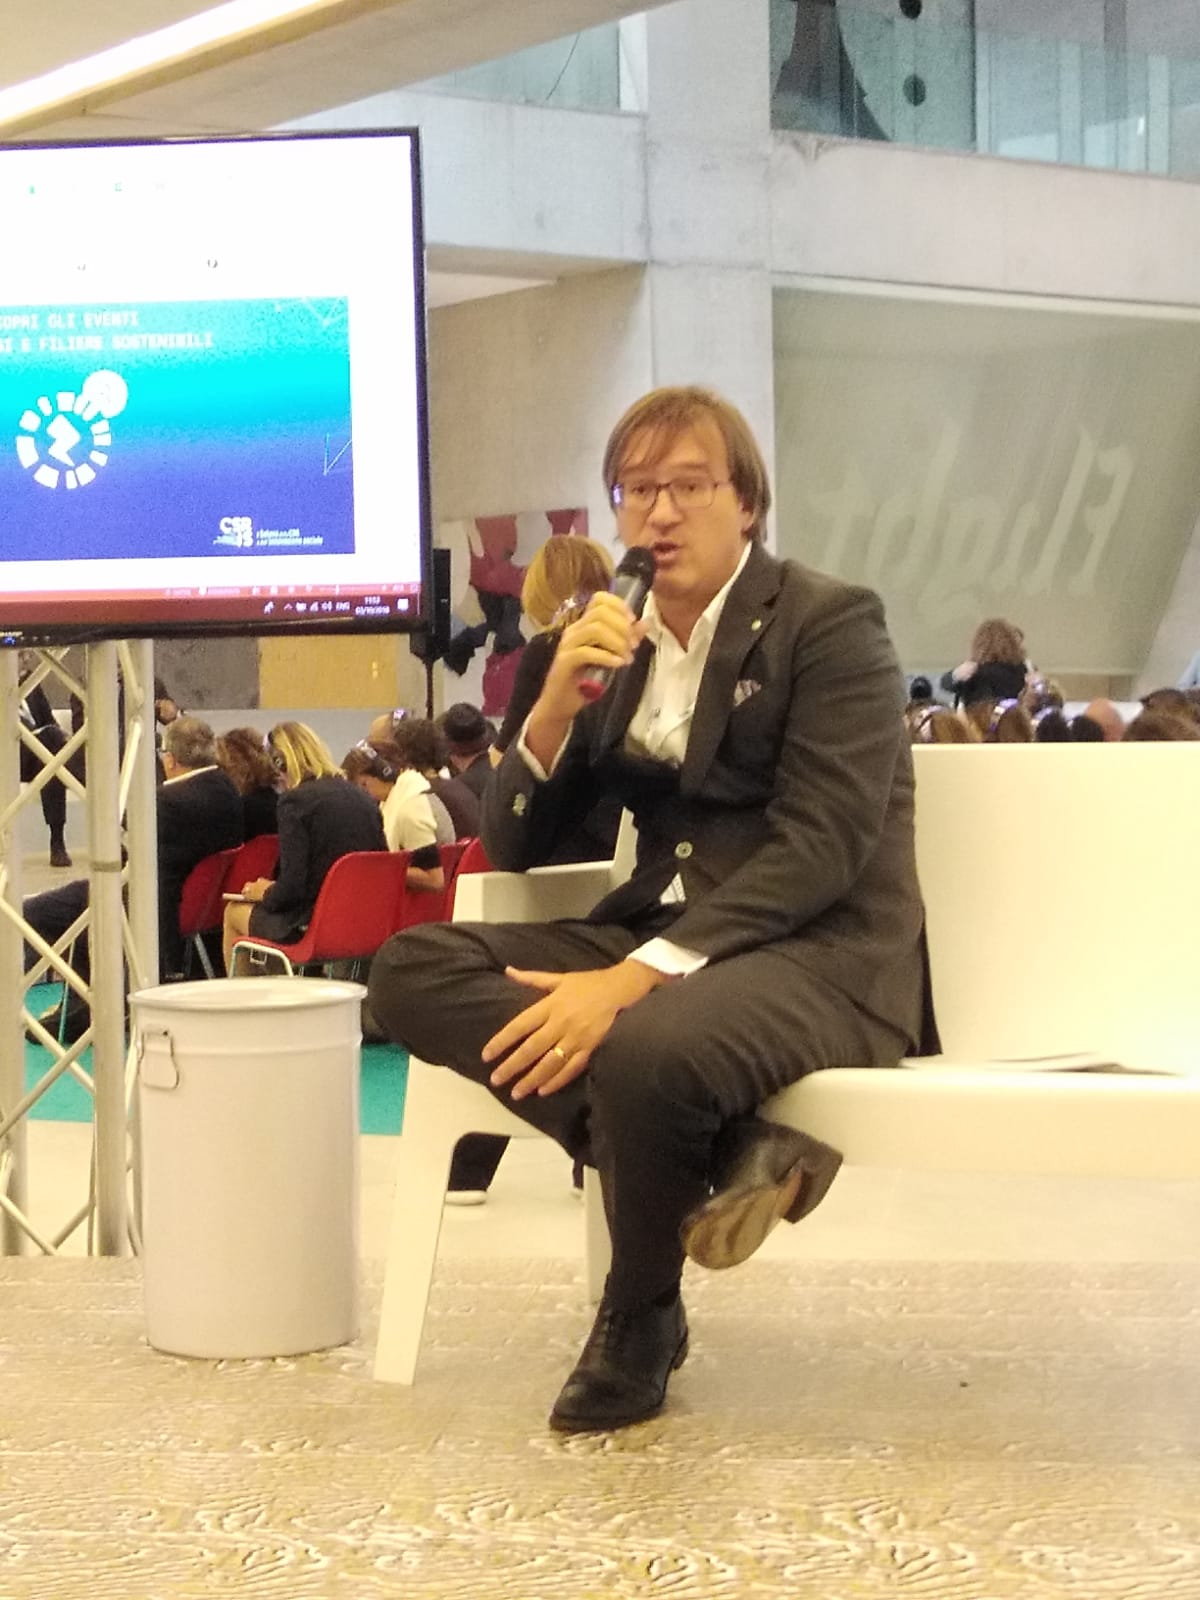 Mario Pagliaro presenta Helionomics alla Universit "Bocconi" di Milano il 3 Ottobre 2018